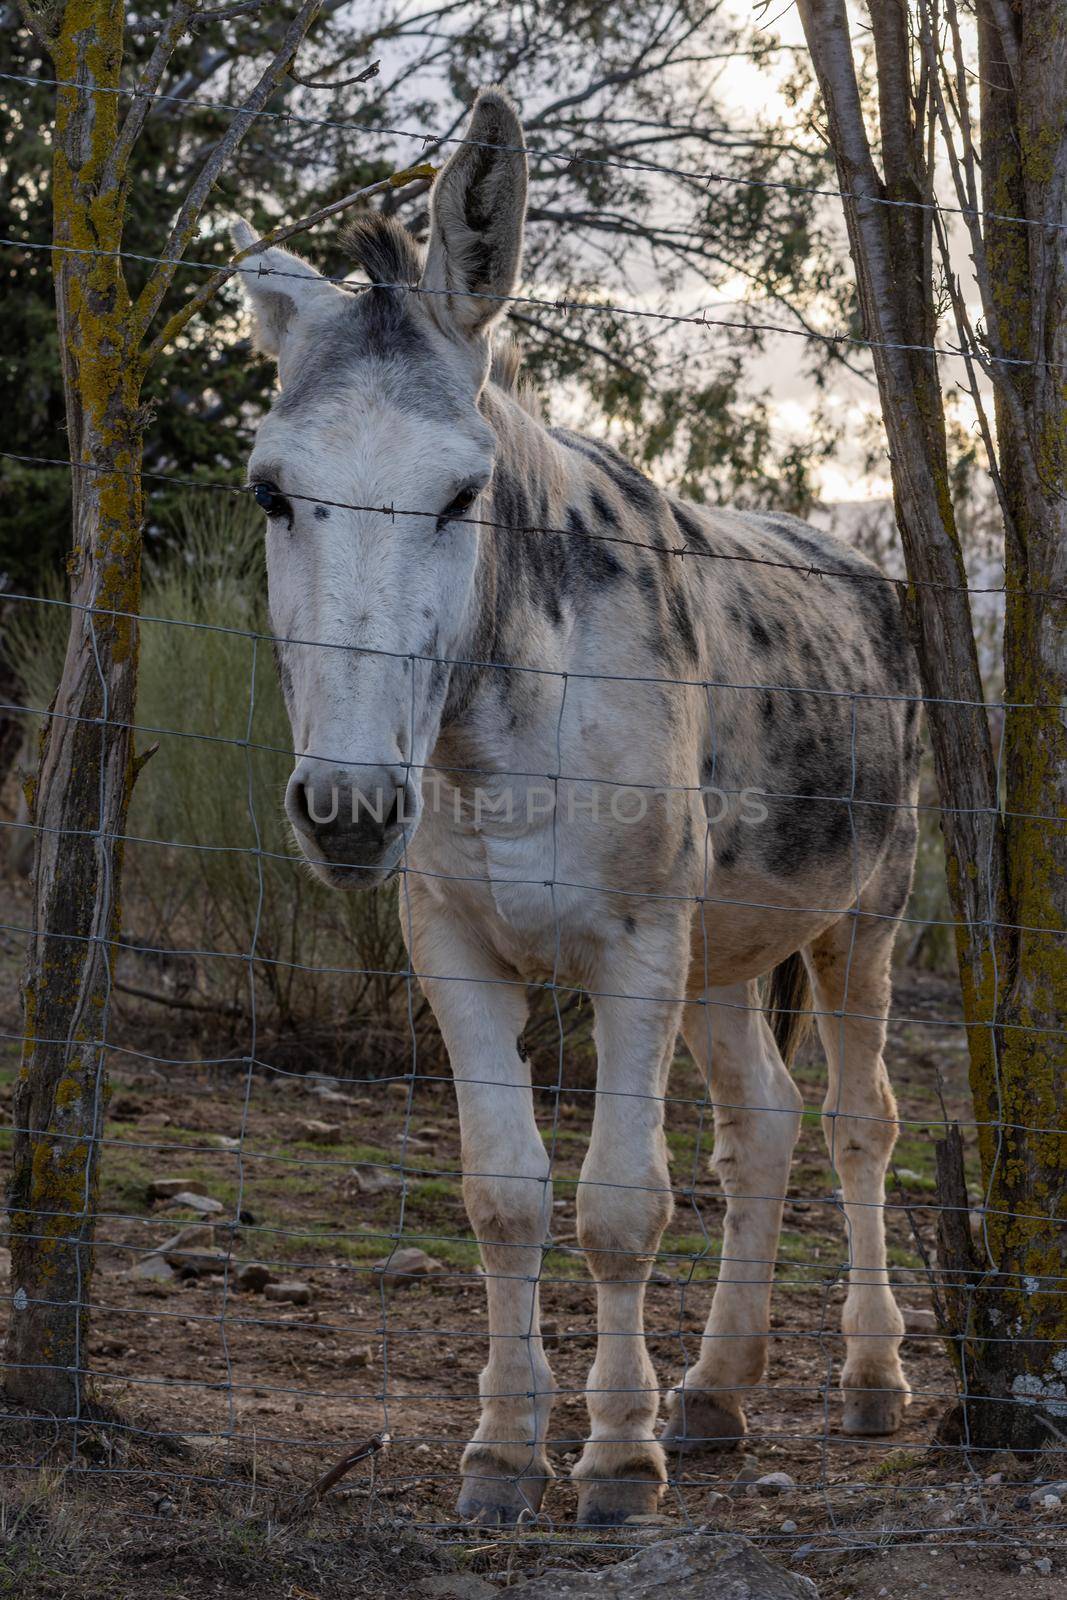 donkeys of the serrania of ronda by joseantona